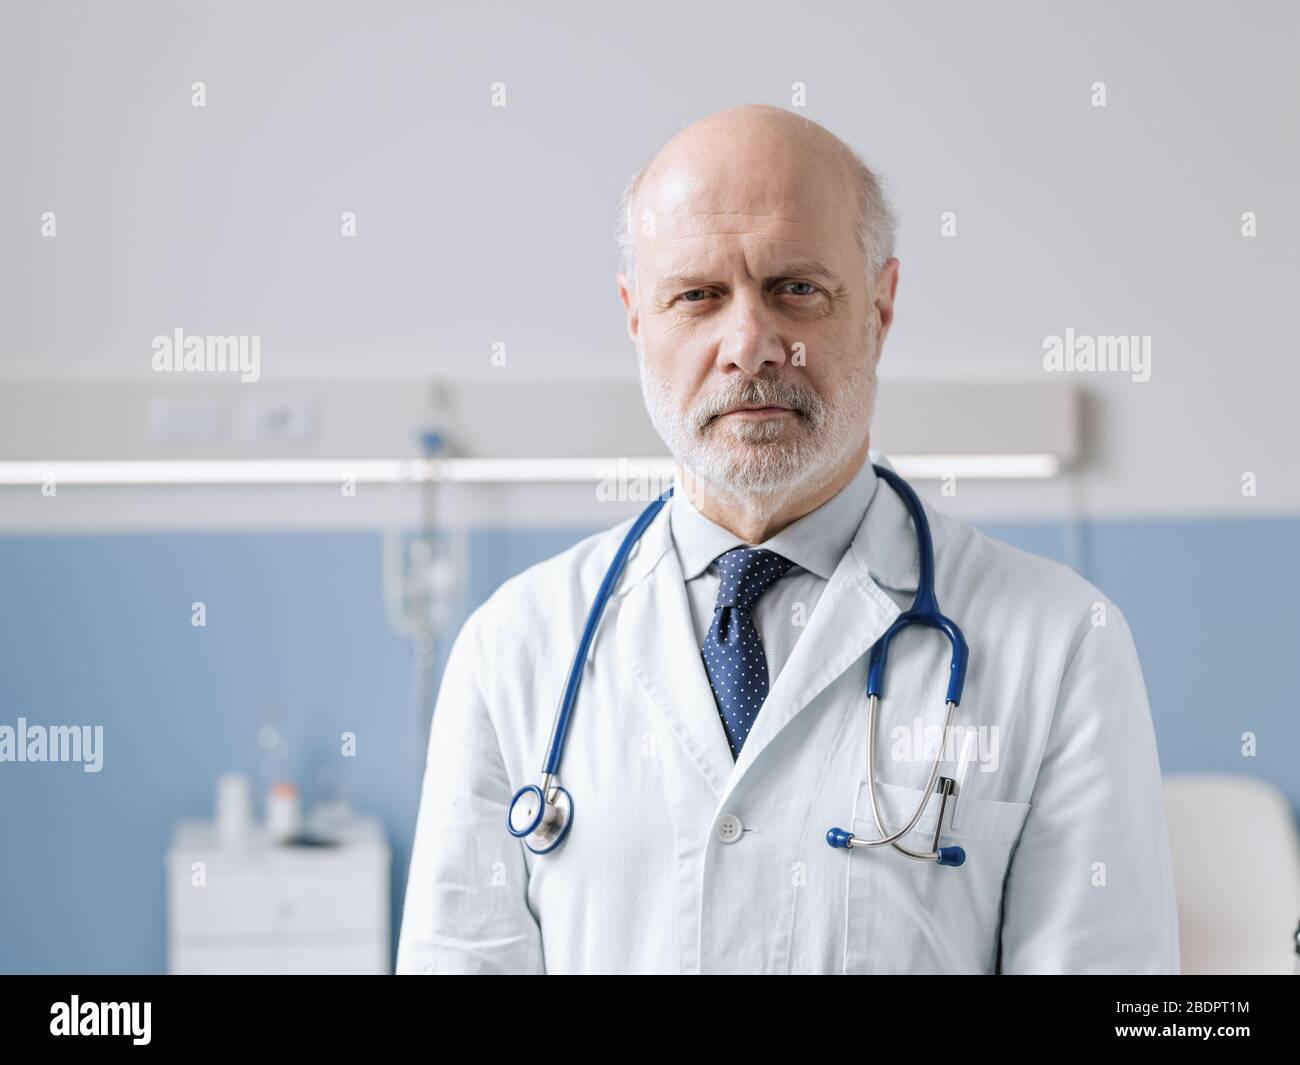 Médecin professionnel debout à côté d'un lit d'hôpital et regardant la caméra, les soins de santé et le concept de médecine Banque D'Images